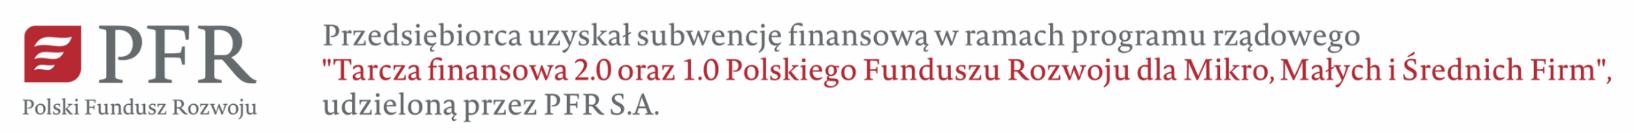 Baner Polskiego Funduszu Rozwoju